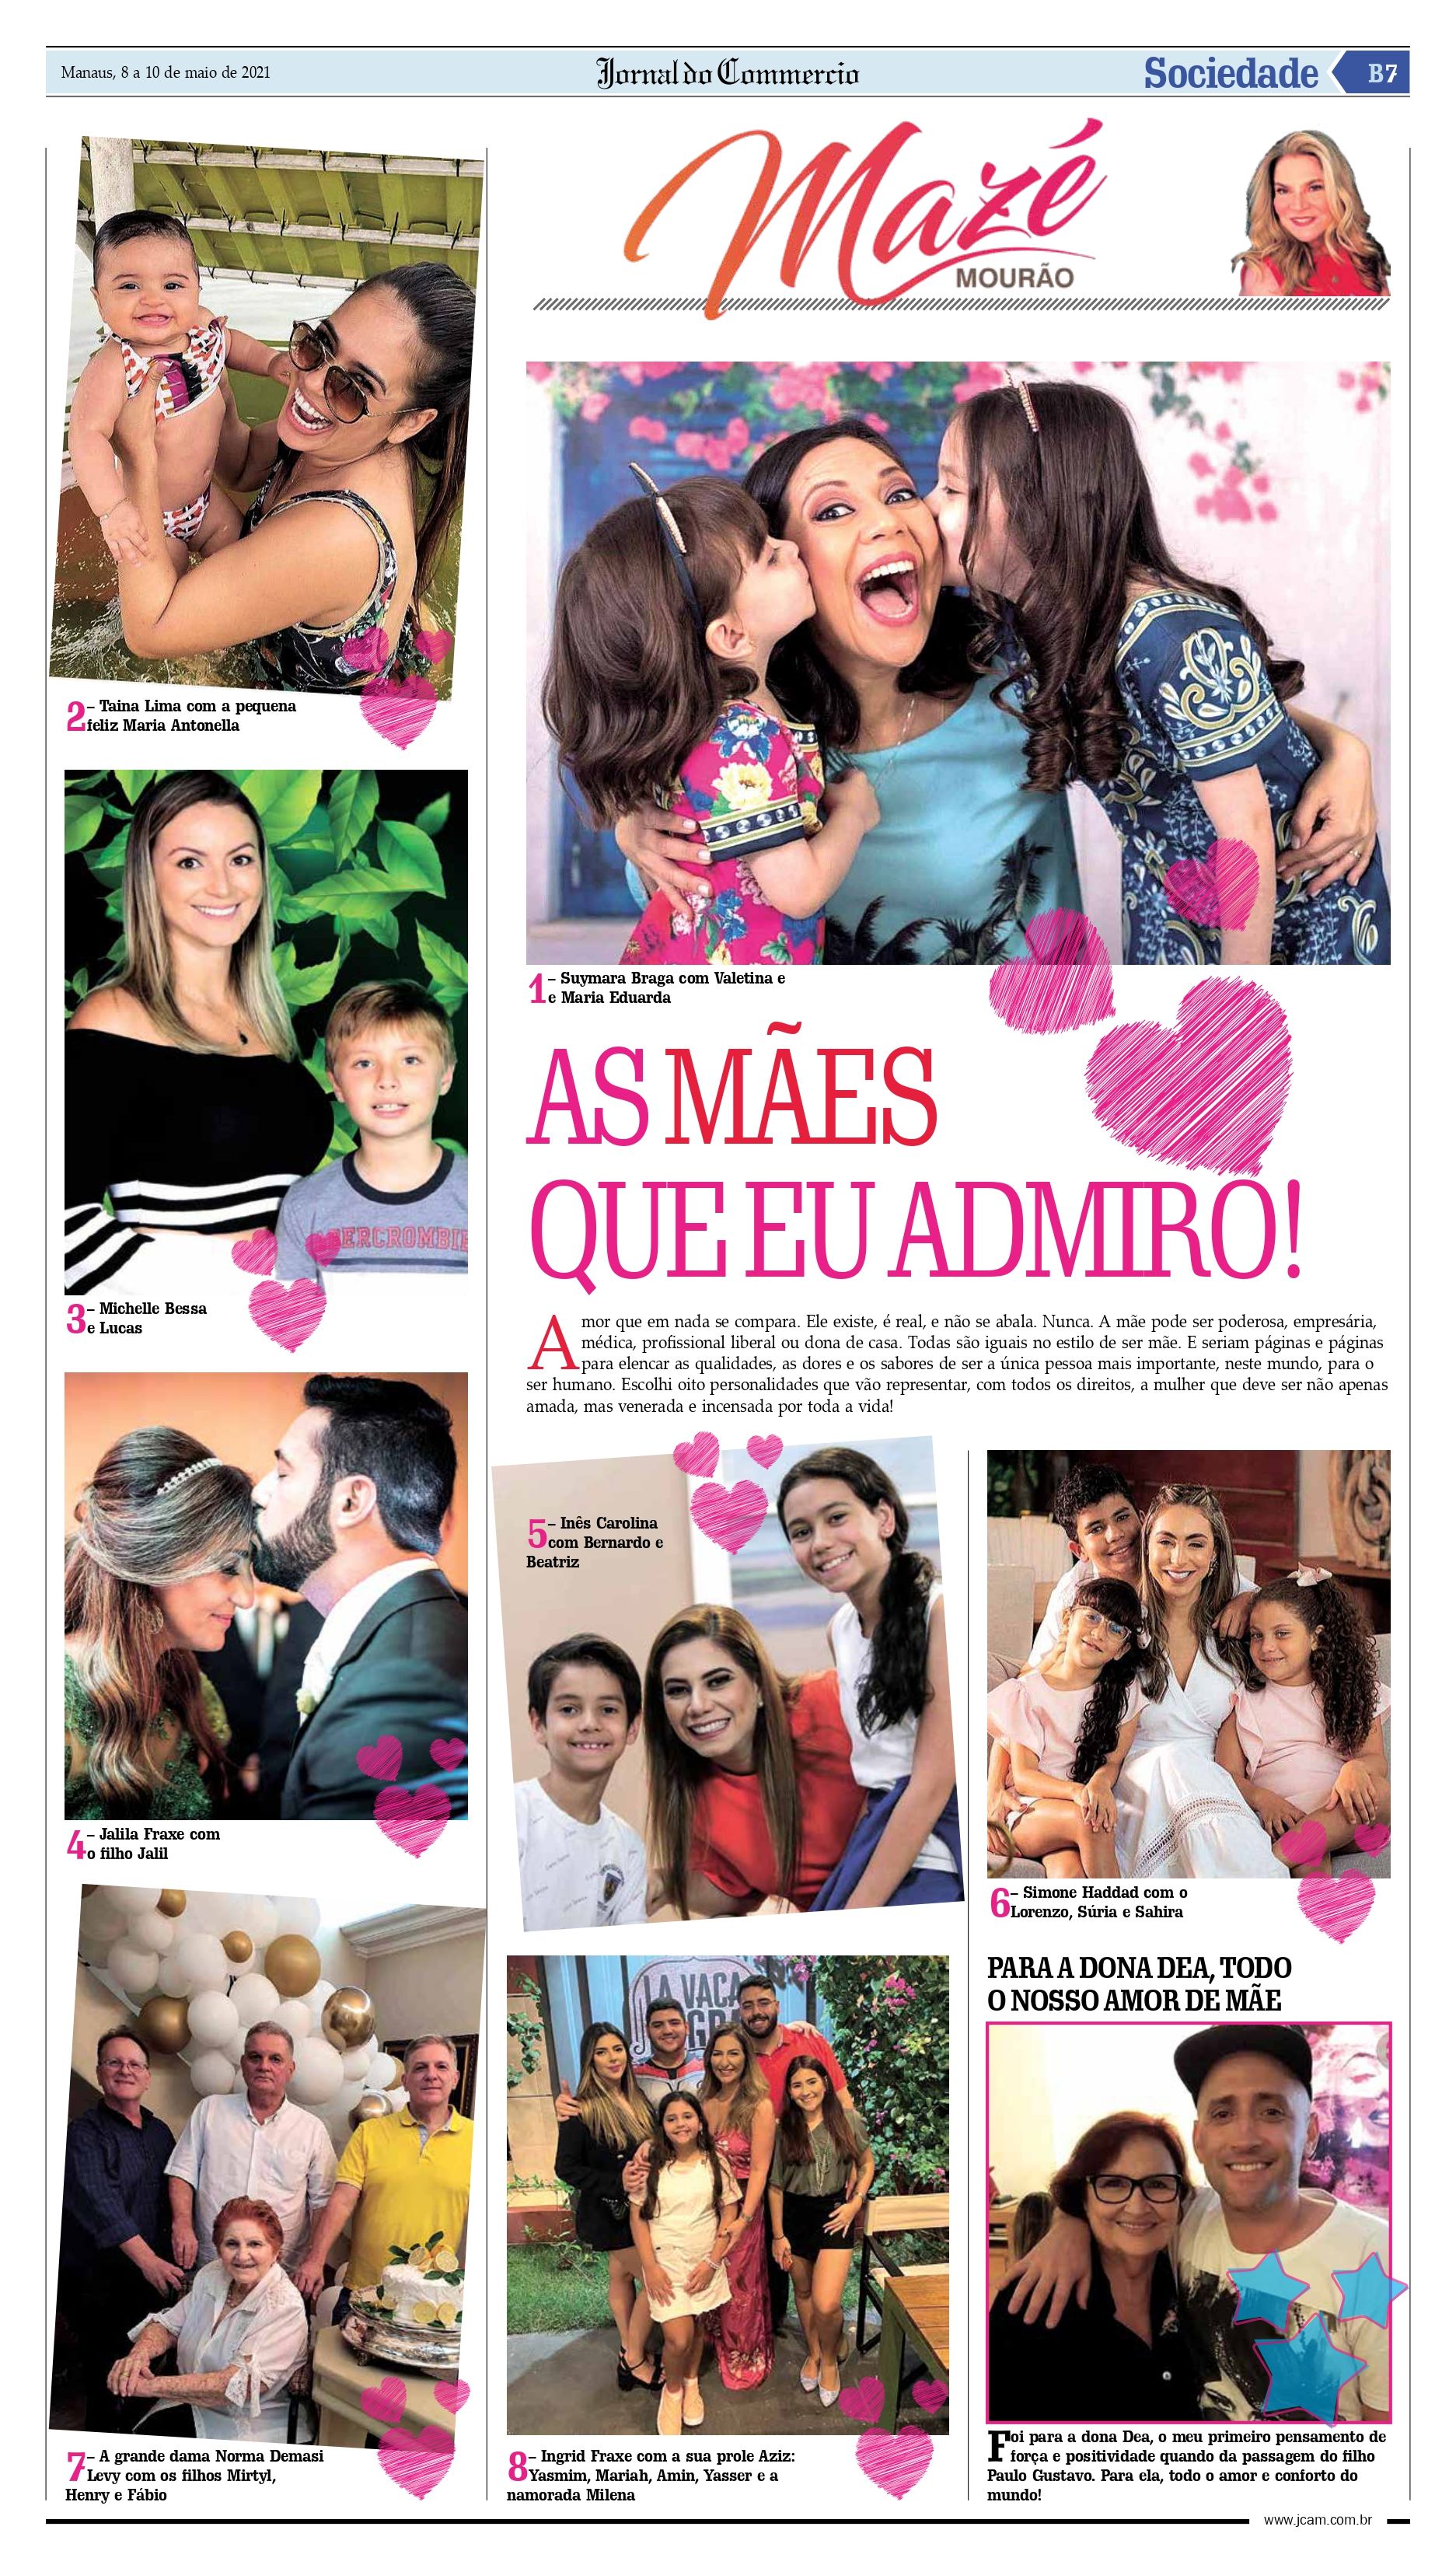 Coluna MZM especial Dia das Mães no Jornal do Commercio